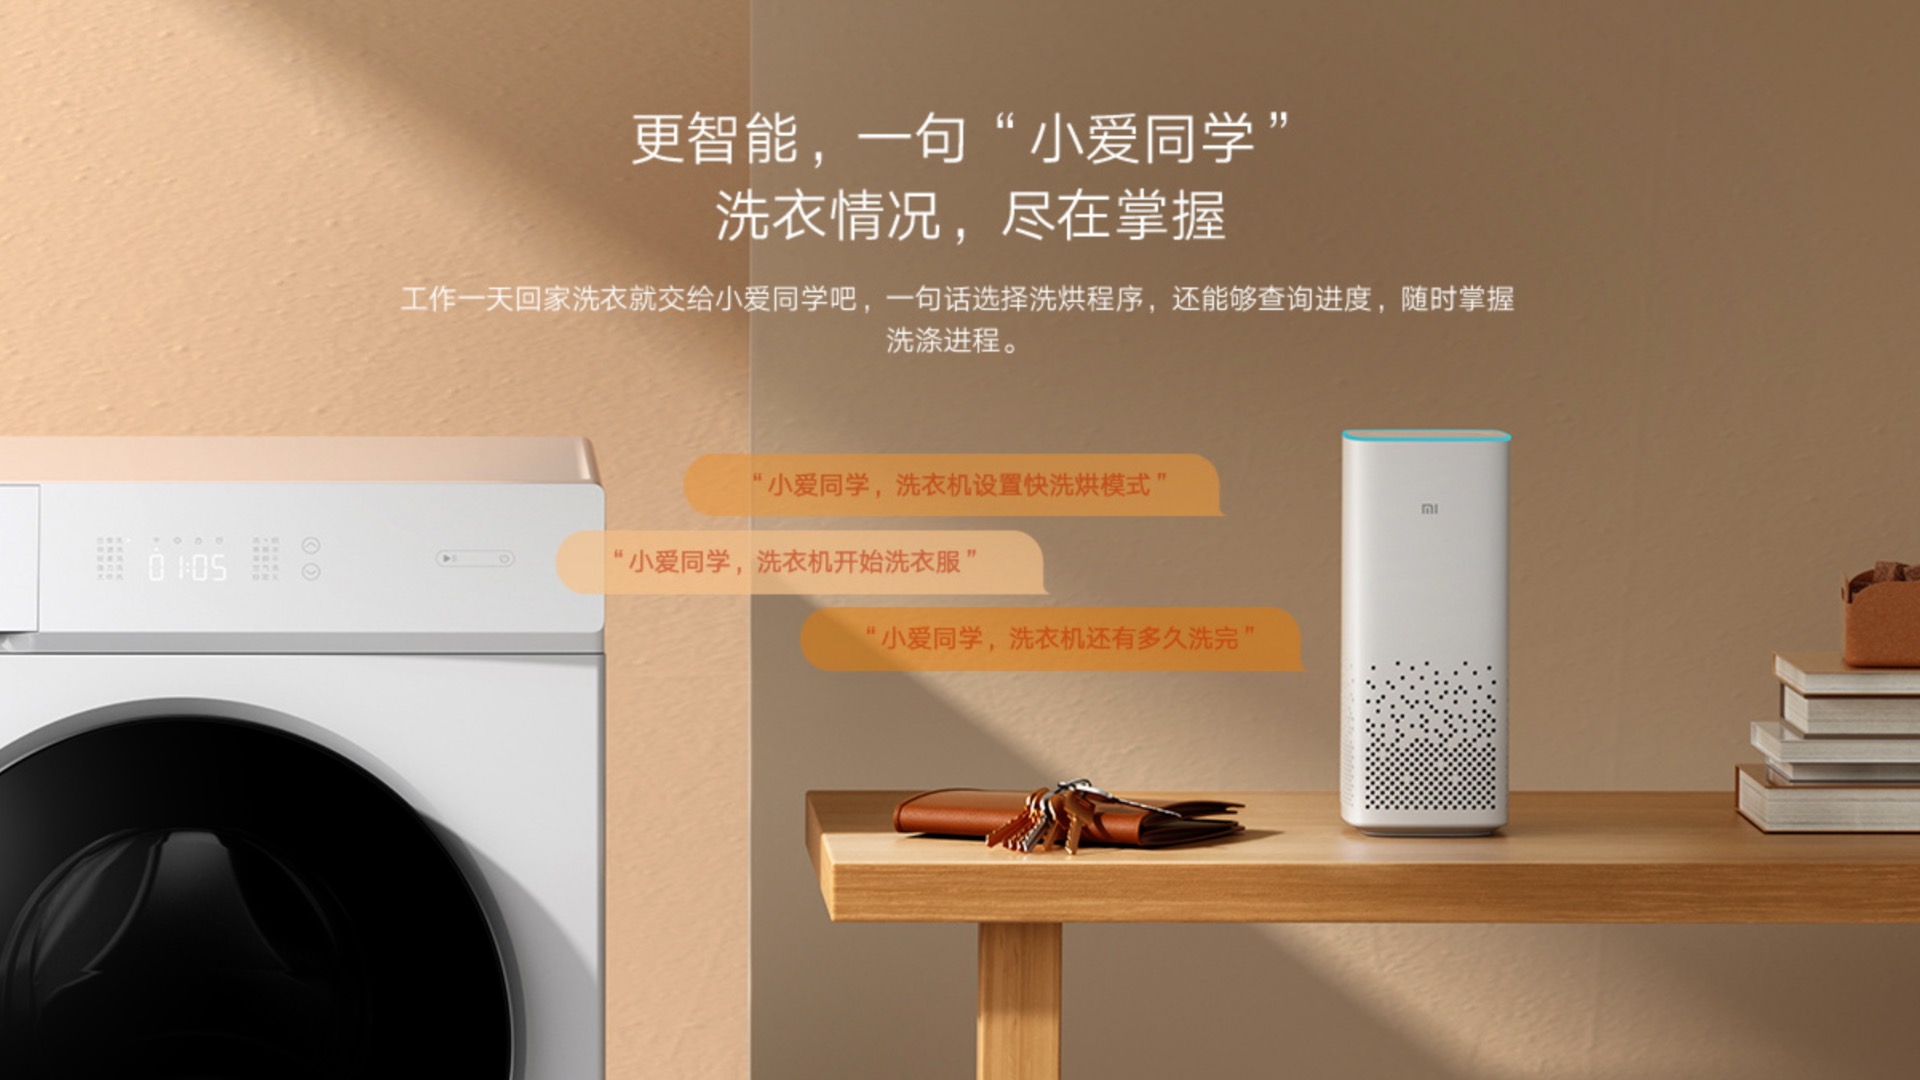 xiaomi mijia internet washing machine